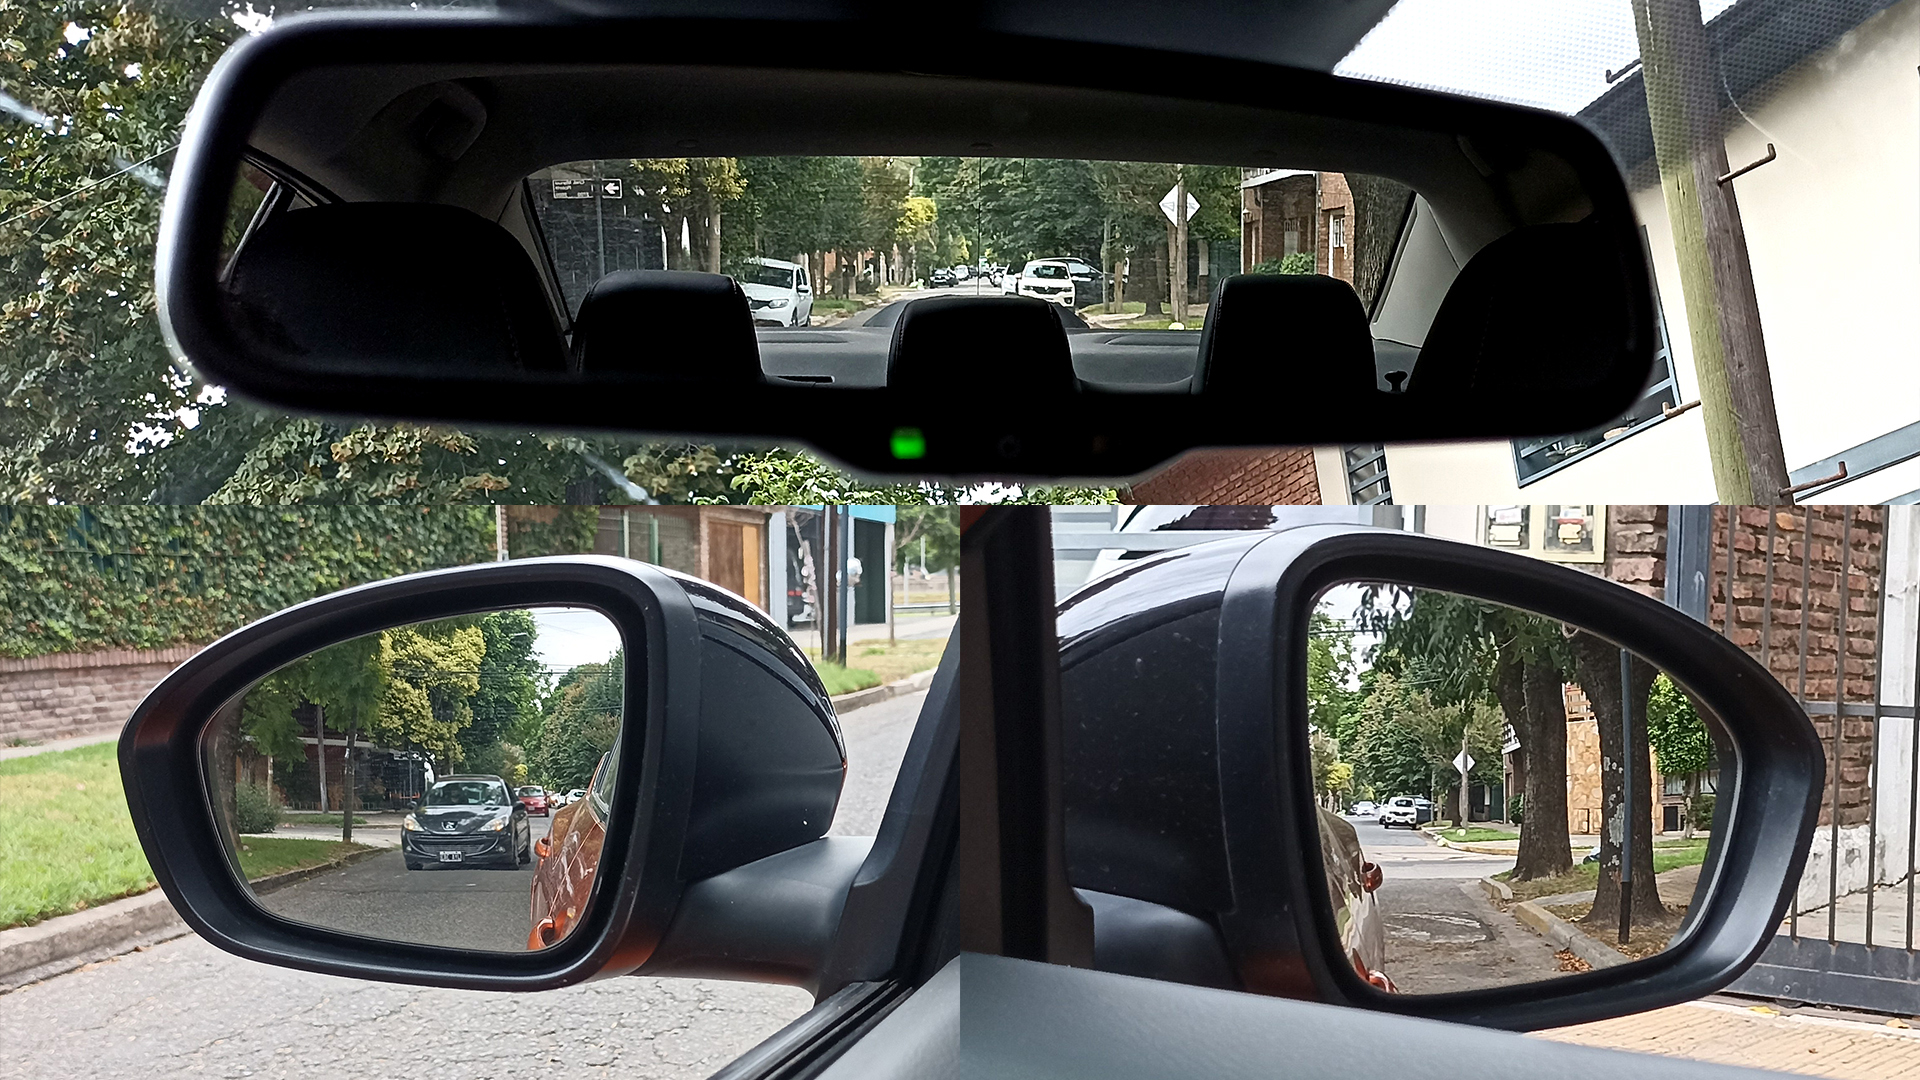 Los tres espejos cumplen una función vital para el tránsito ordenado. Mirar constantemente el entorno, evita sorprender a otros conductores con un cambio de dirección